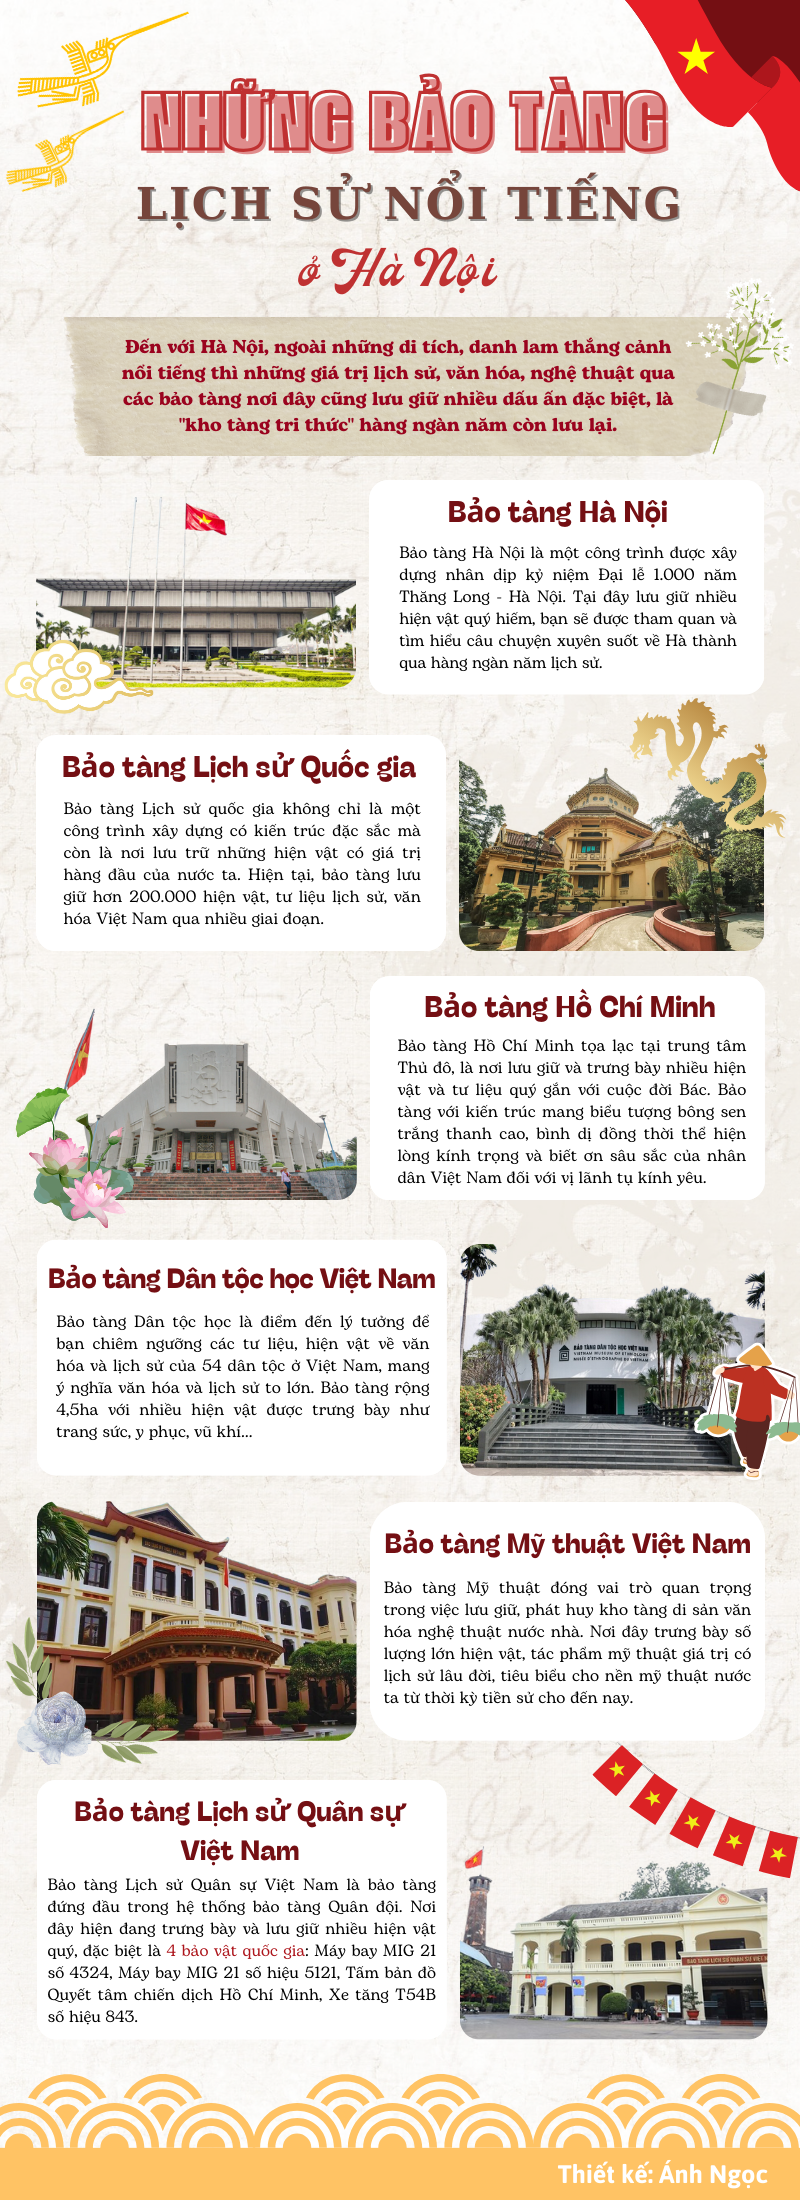 [Infographic] Top 5 bảo tàng lịch sử nổi tiếng ở Hà Nội